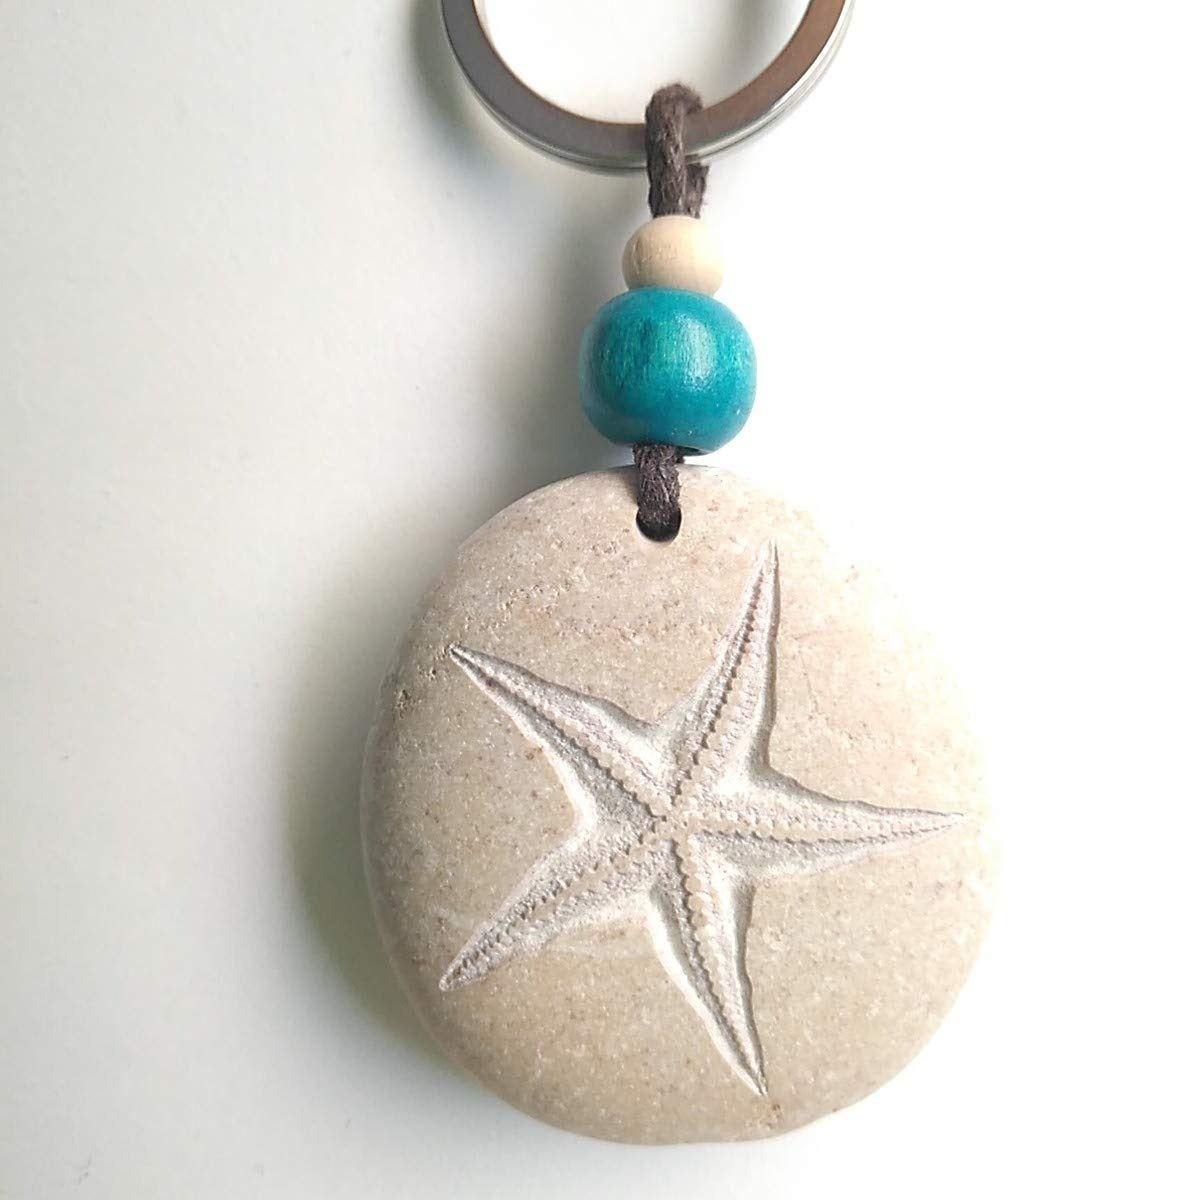 Piedra natural tallada con una estrella de mar, de ARTE25 - Arte en Piedra (13,75 euros)